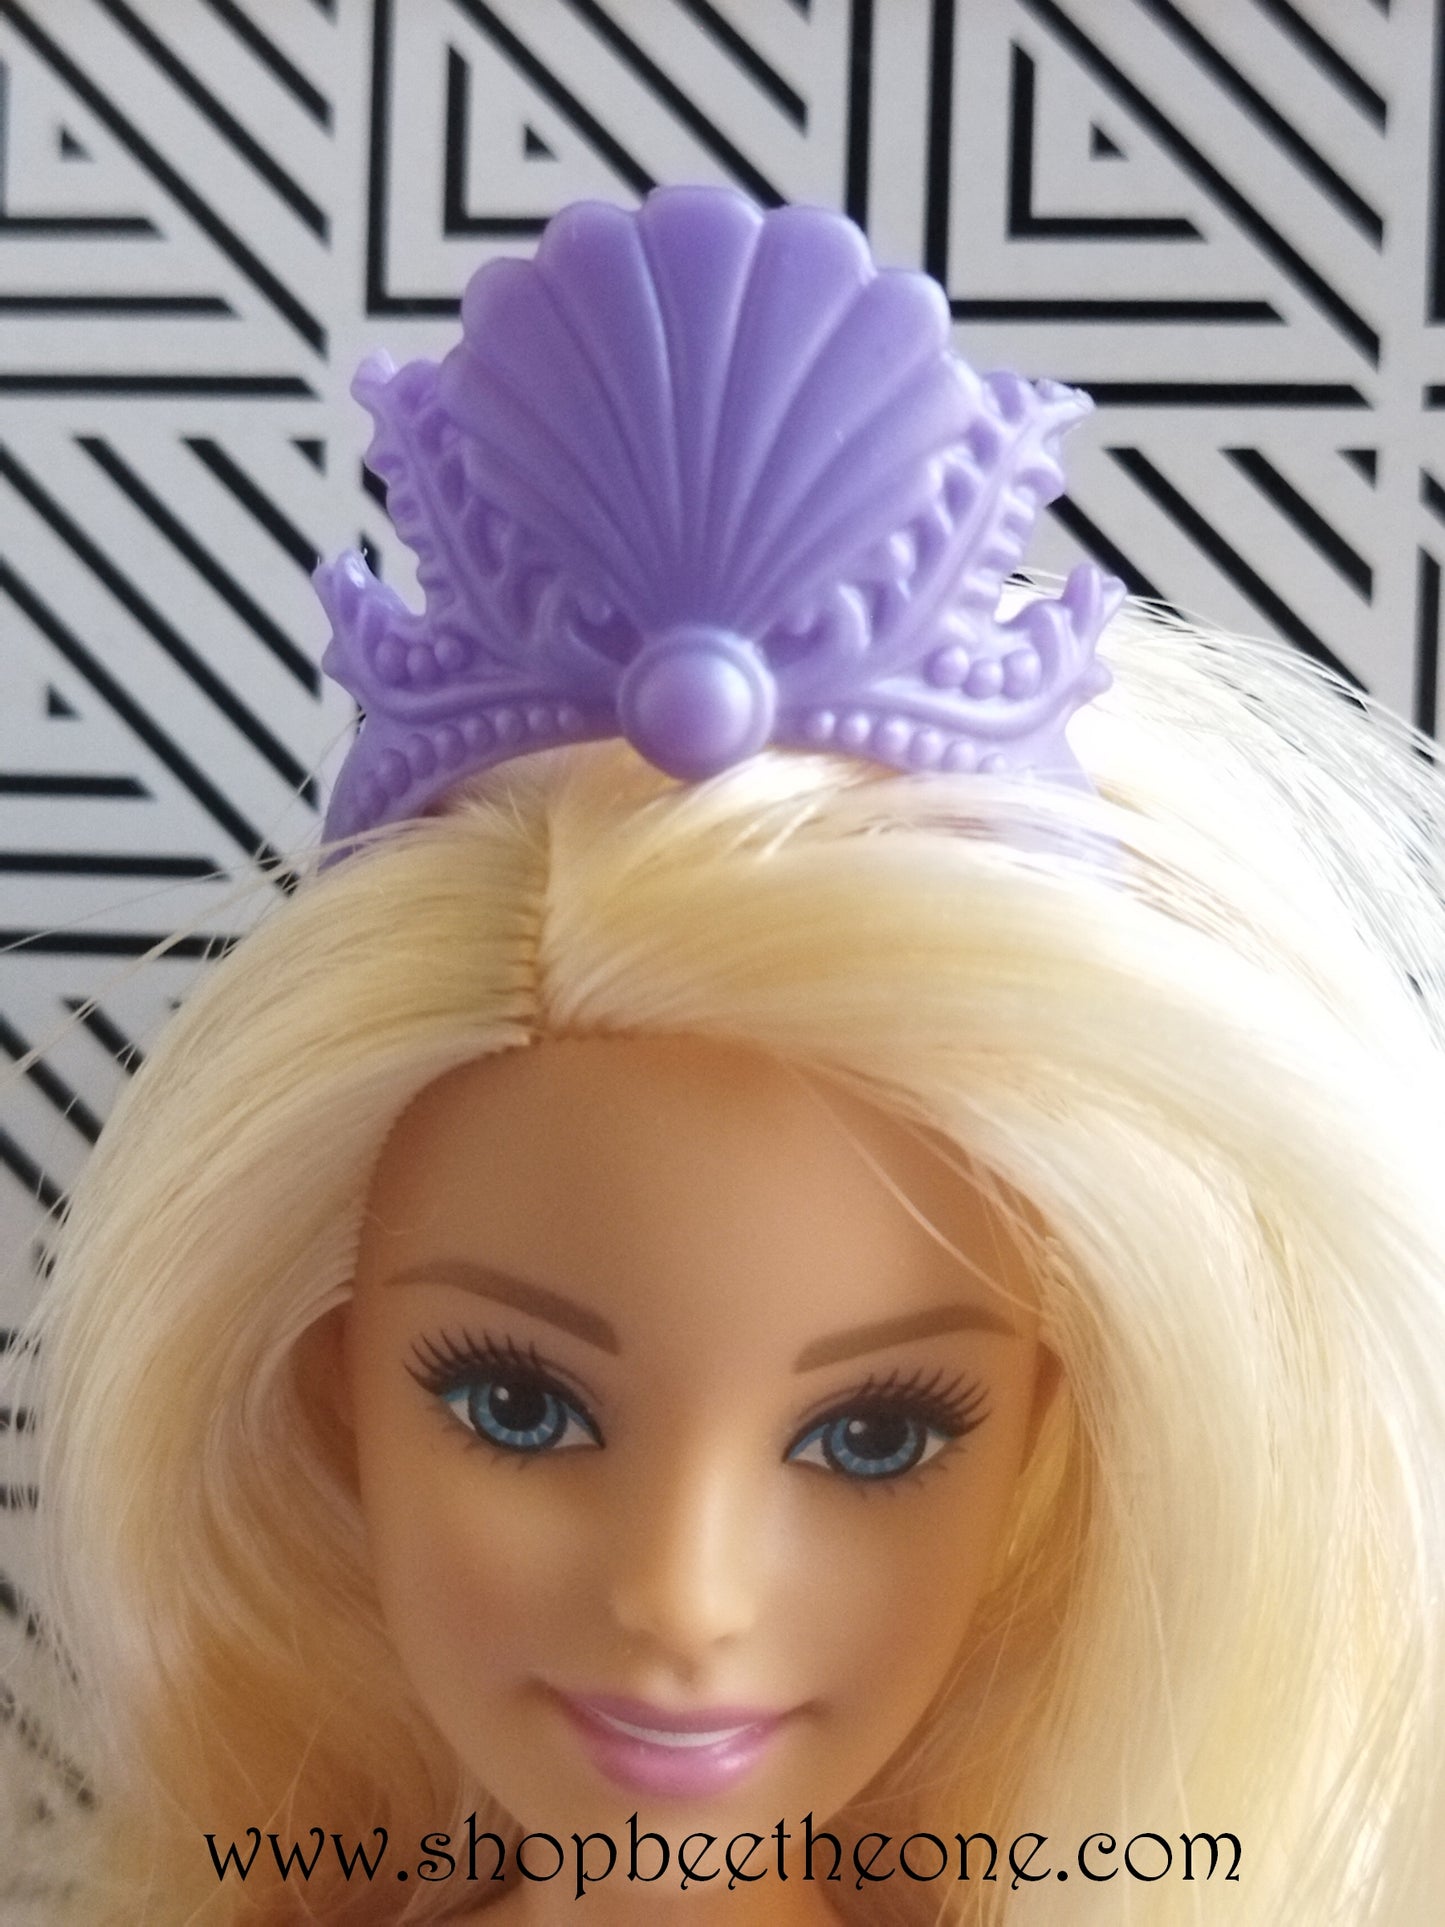 Barbie Collection Princesses - Princesse Sirène - Mattel 2004 - Exclusivité Europe - Accessoires